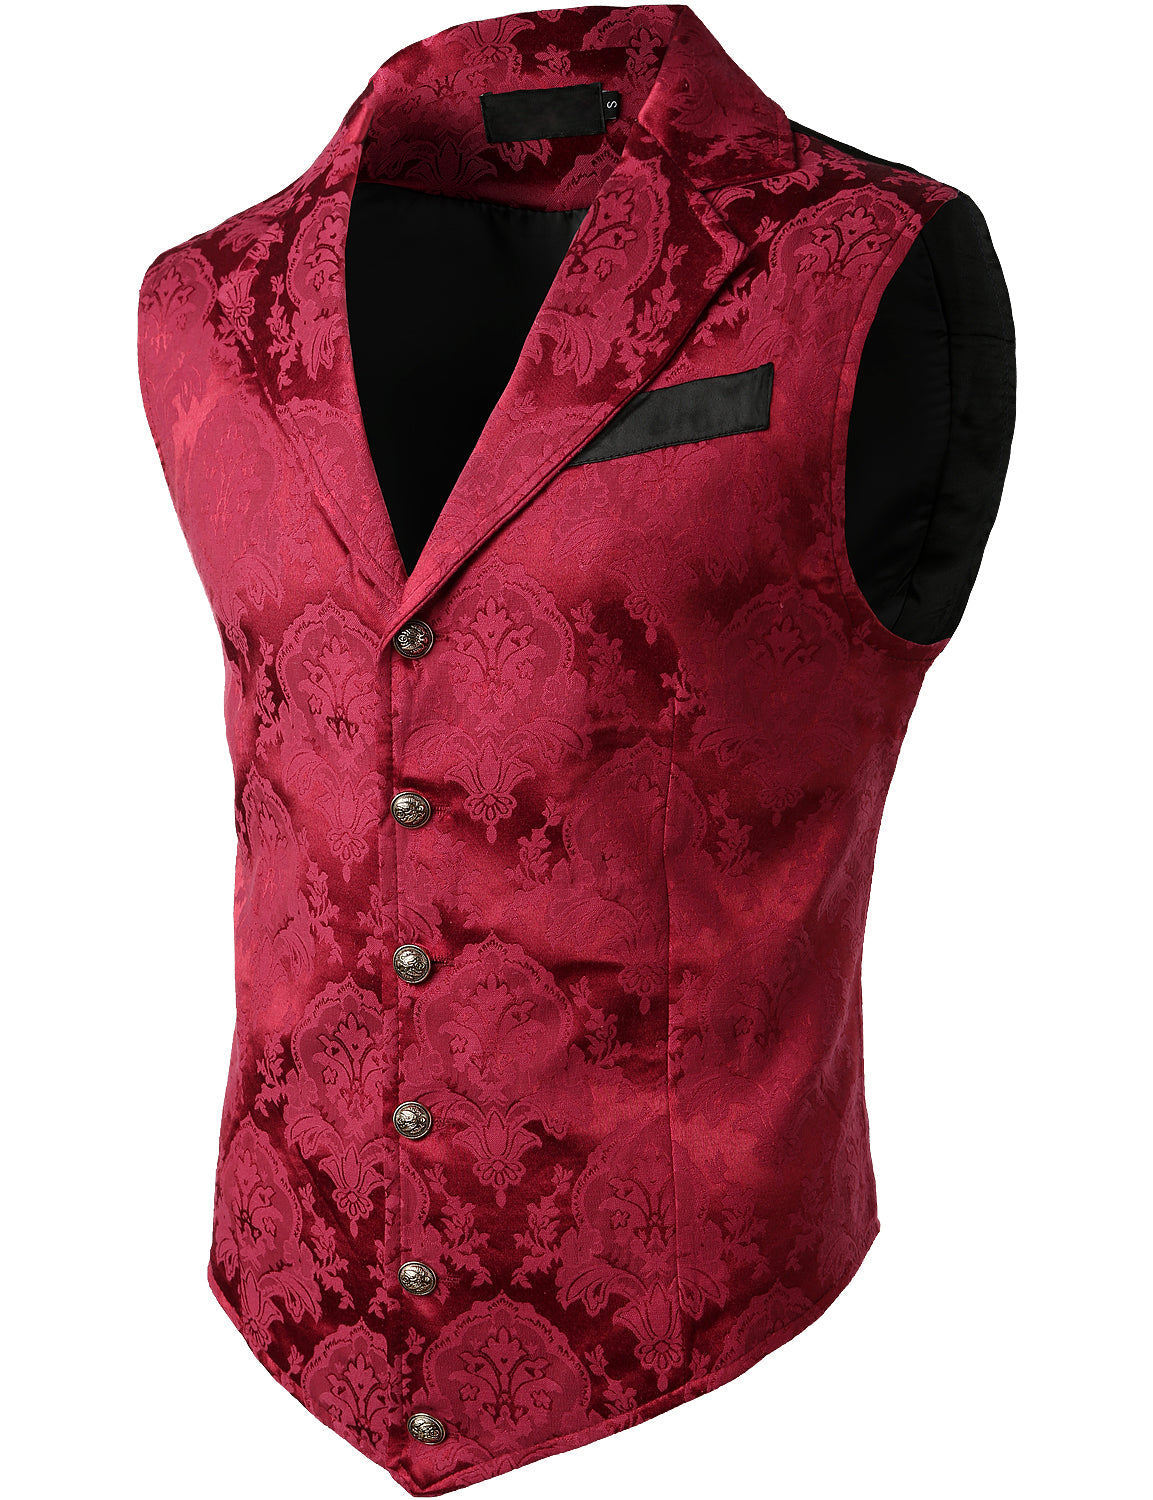 Men's Victorian Suit Vest Steampunk Gothic Waistcoat Vintage Paisley Floral Red Vest